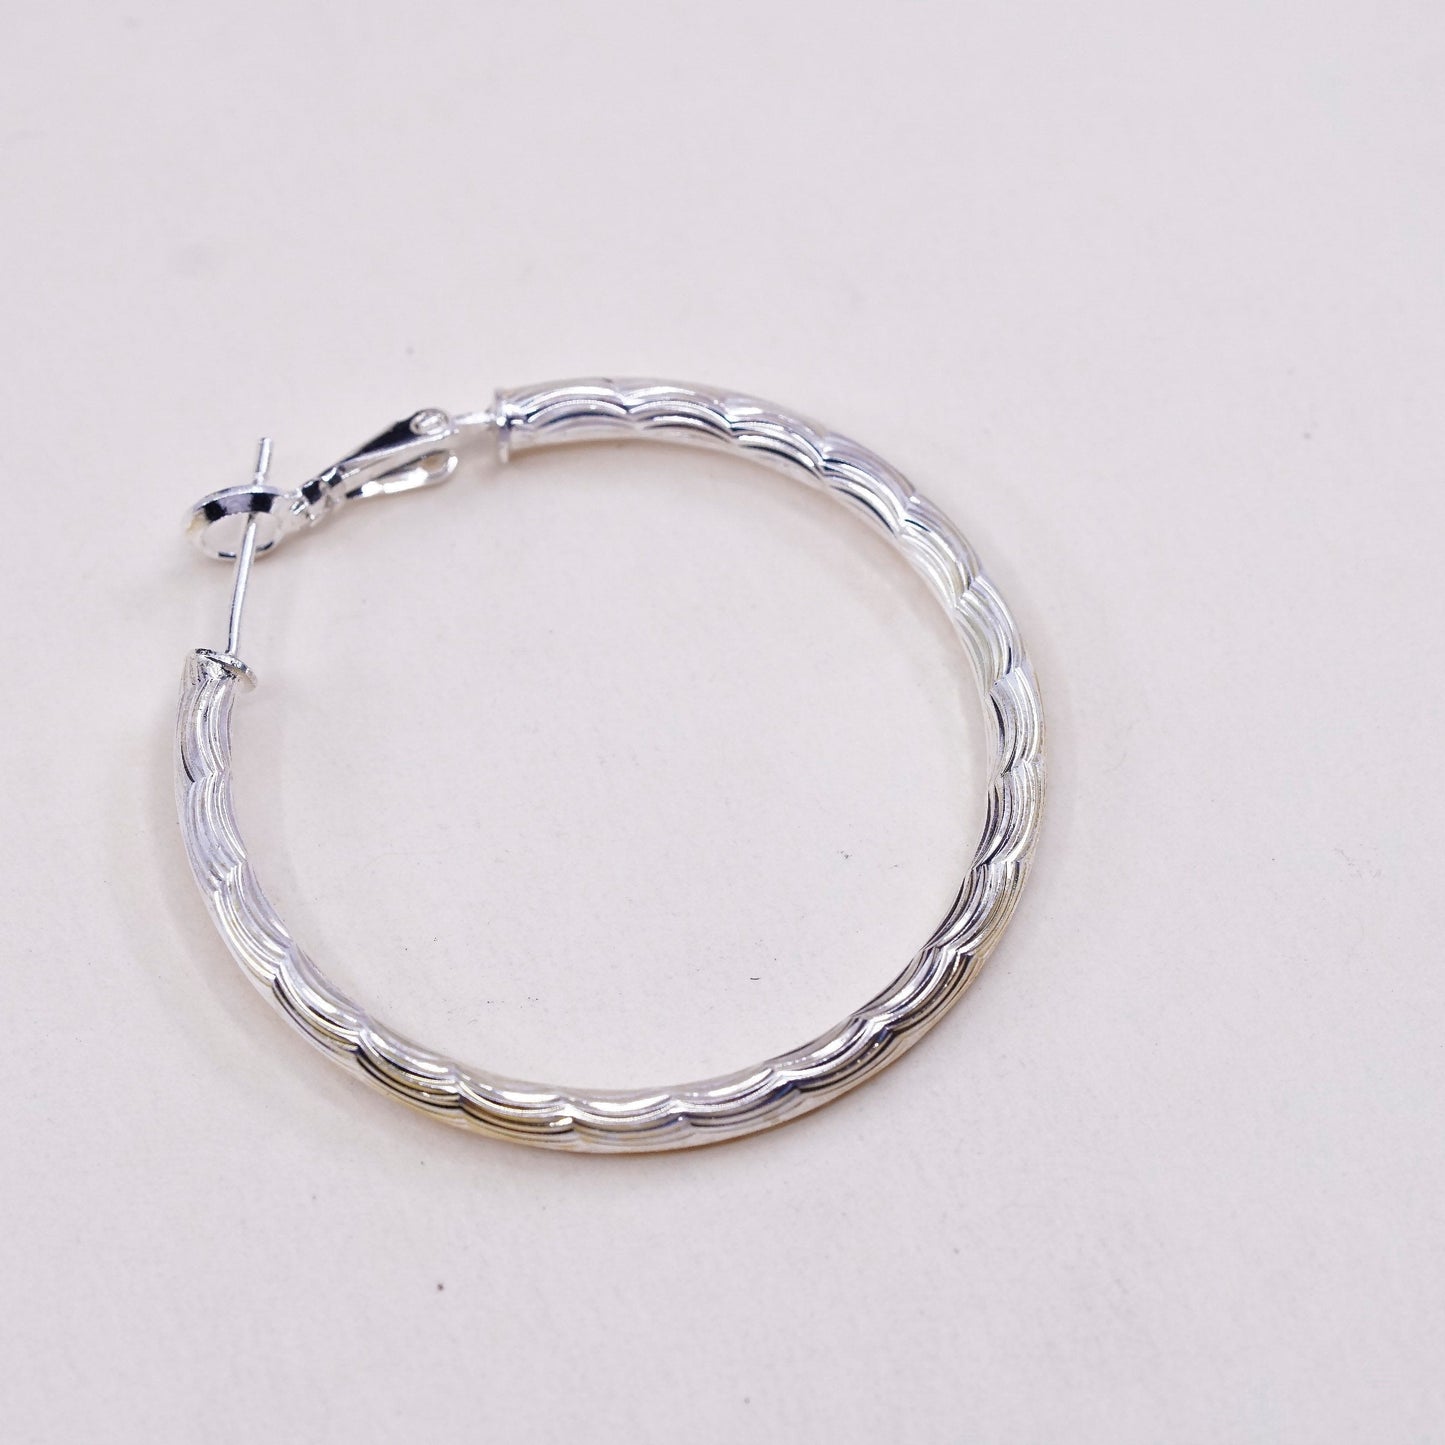 1.5”, VTG sterling silver loop earrings, textured minimalist primitive hoops